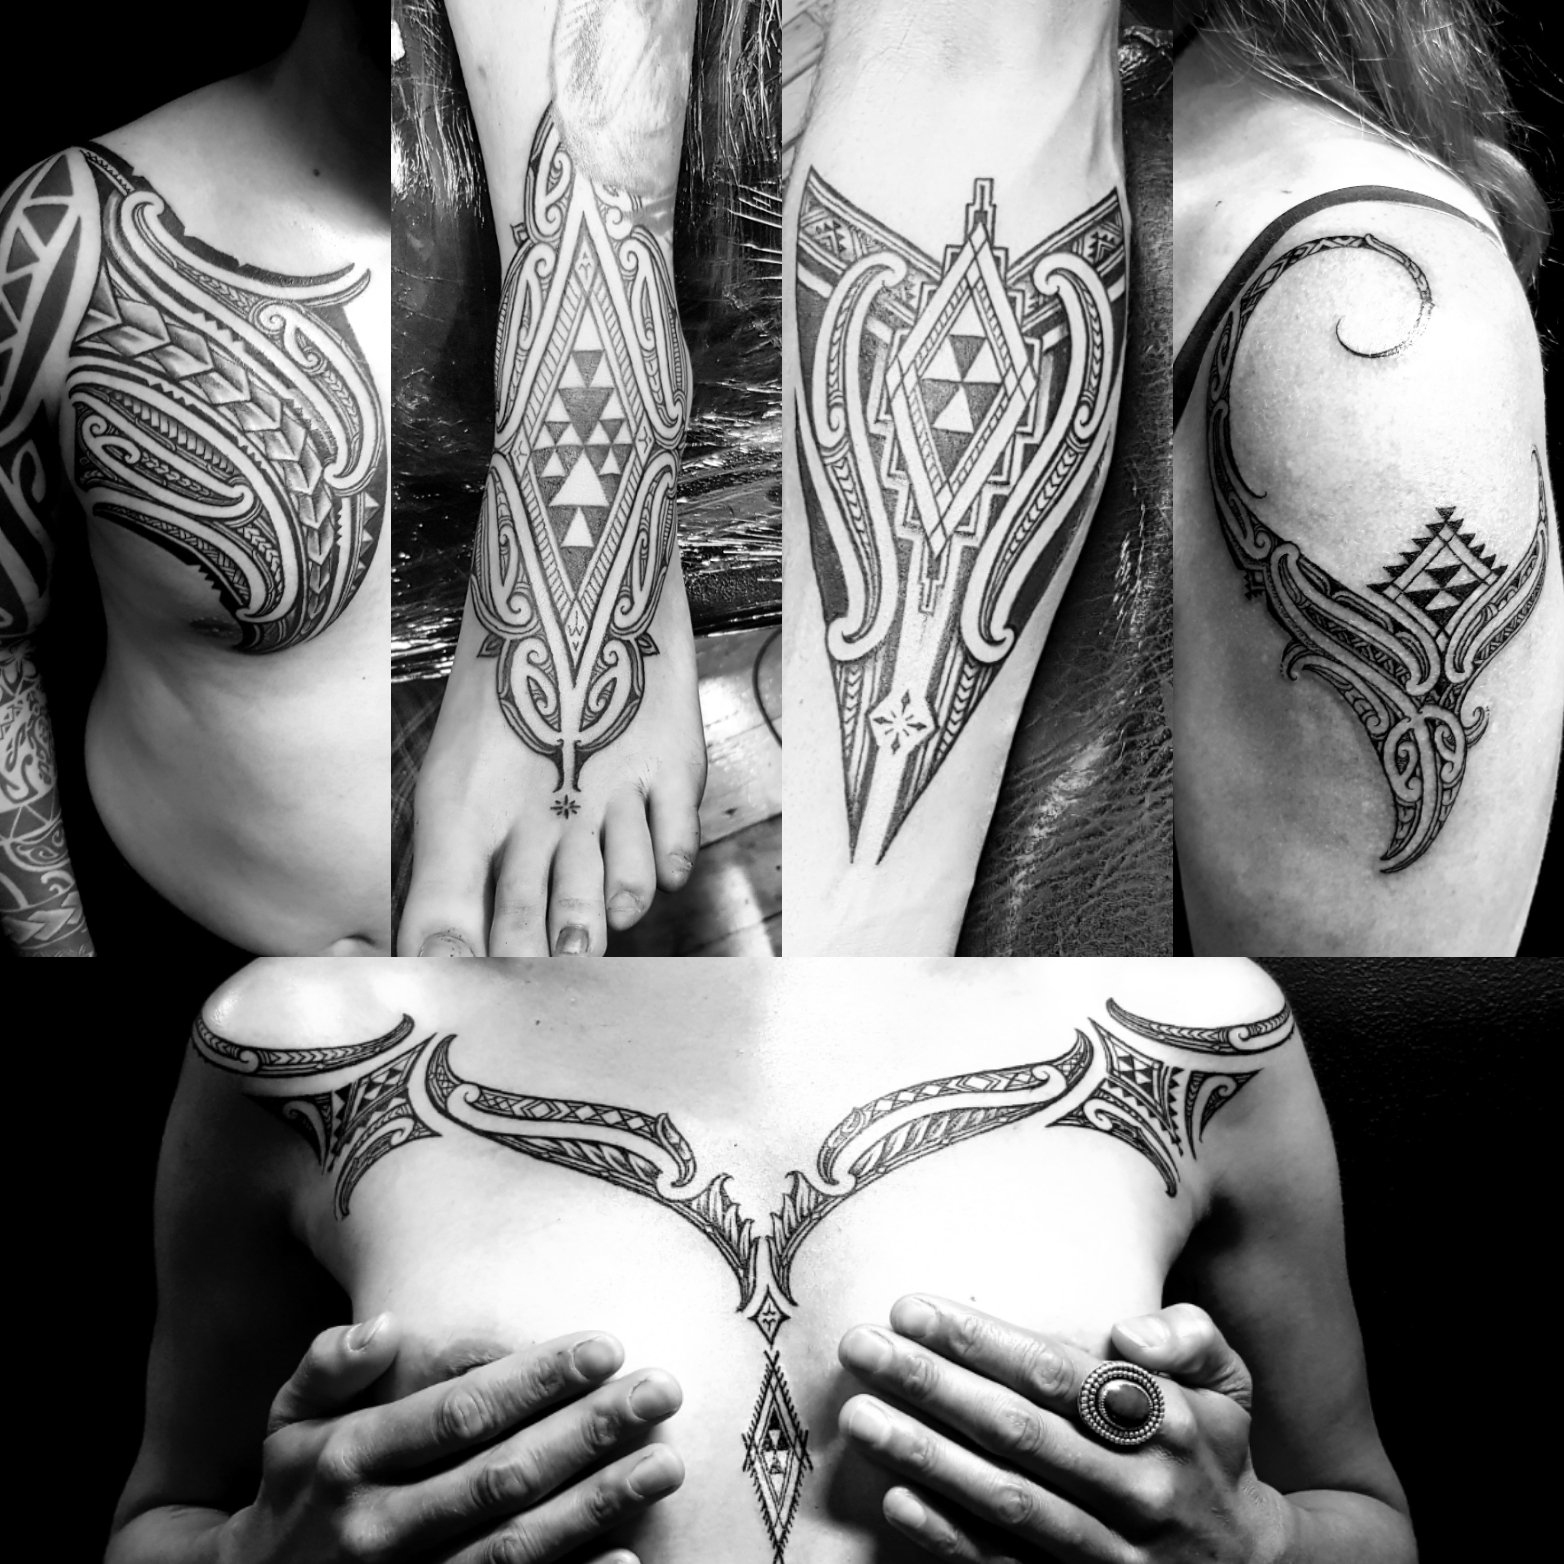 Tattoo of the day - Artist: Pepa - via: NZ tattoo conventi… | Flickr